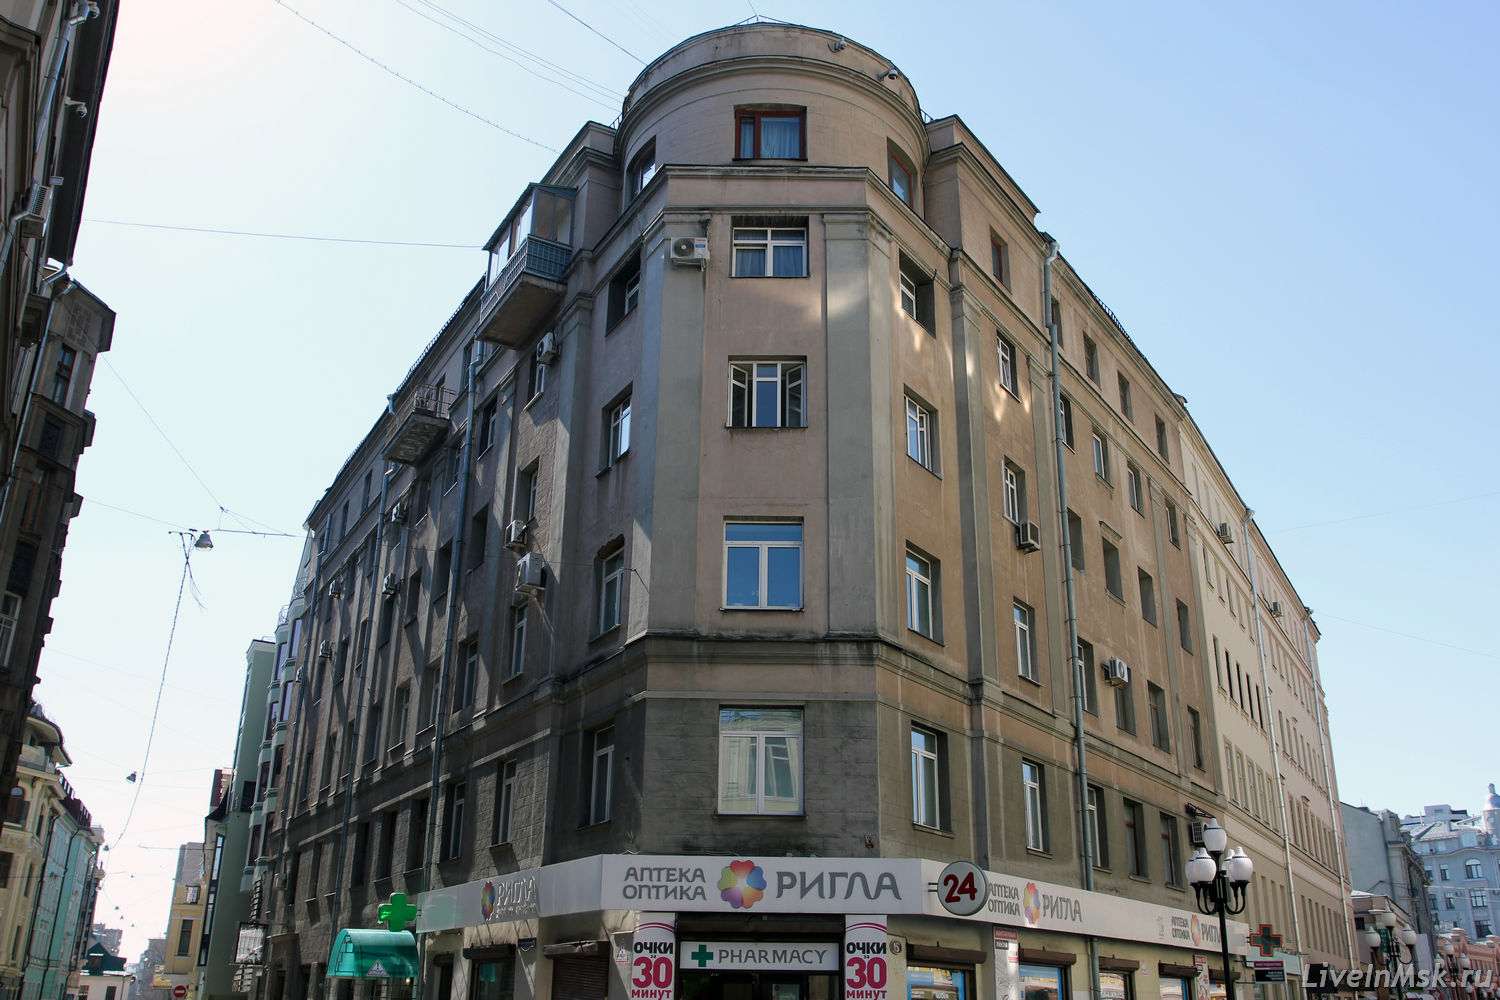 Дом на месте маклерской конторы Хлебникова, фото 2015 года